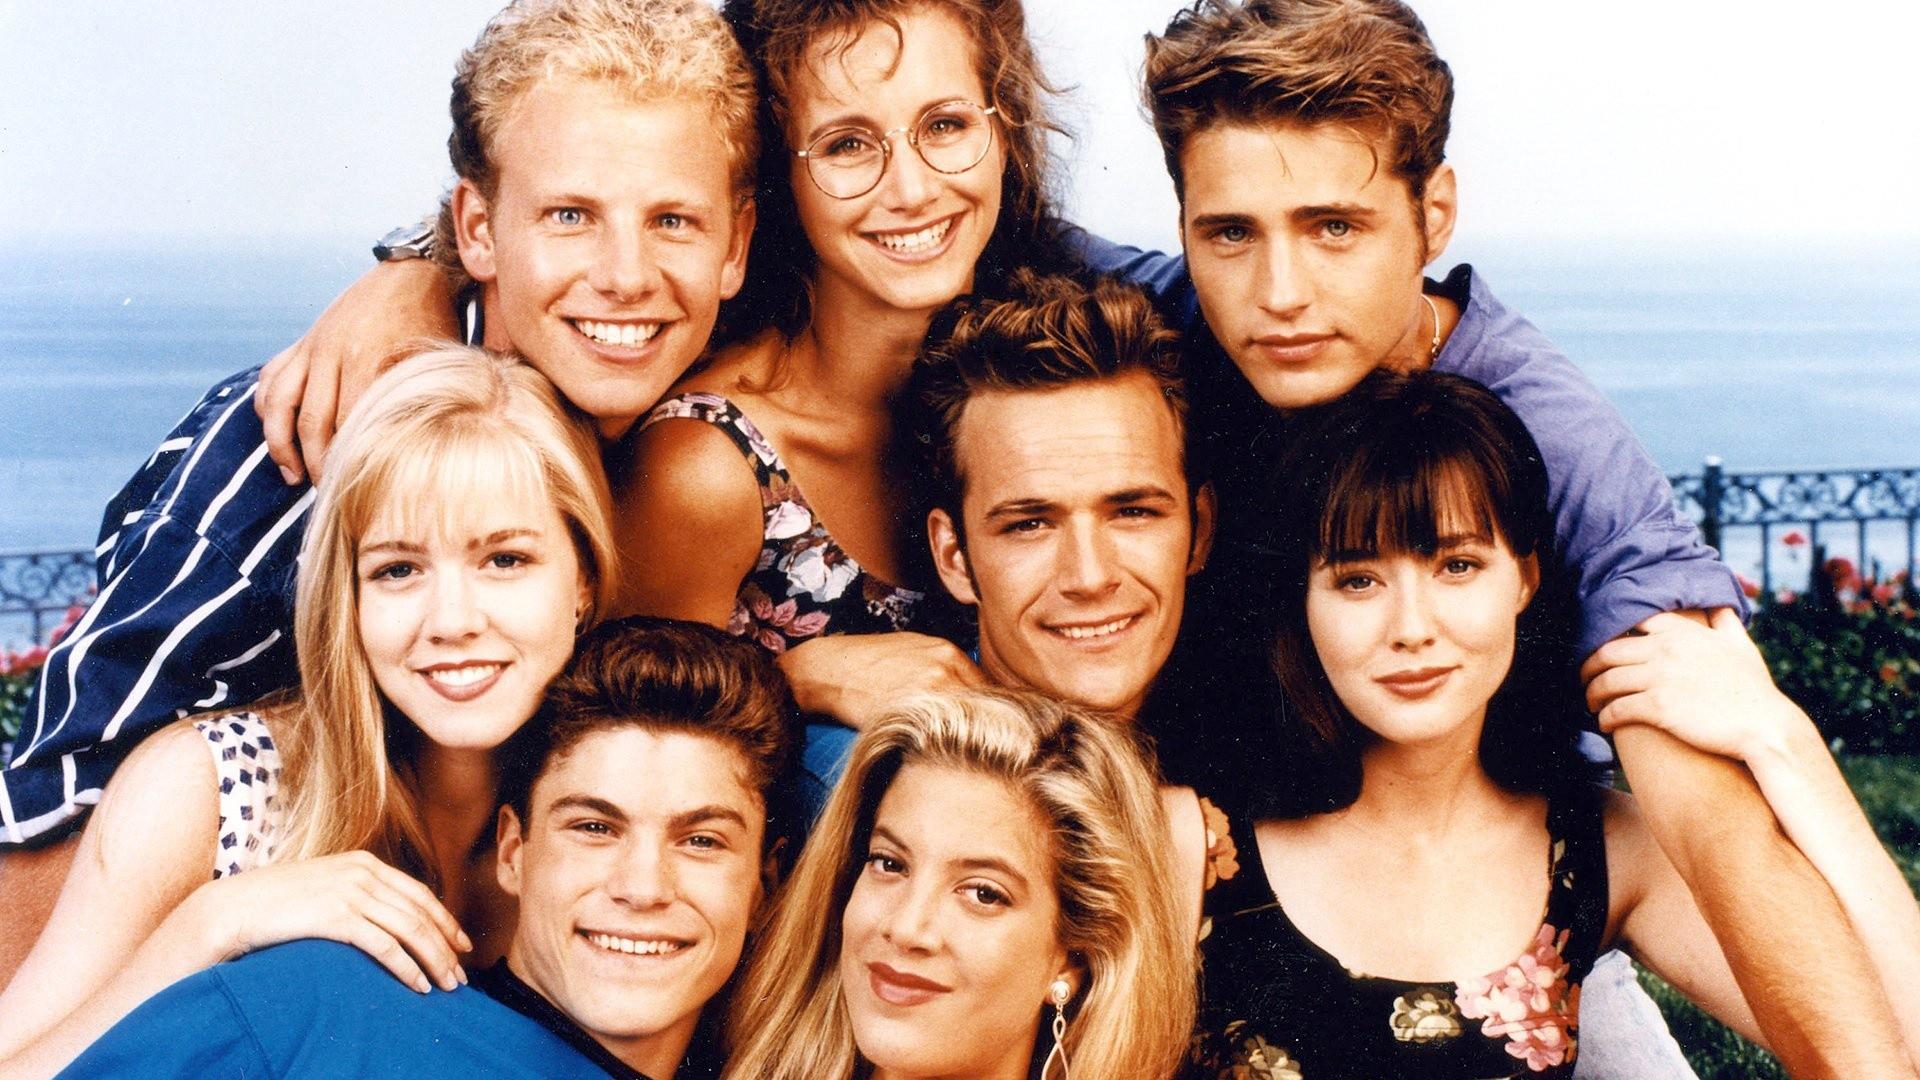 Беверли-Хиллз 90210 – 1 сезон 11 серия «Вечеринка» / Beverly Hills, 90210